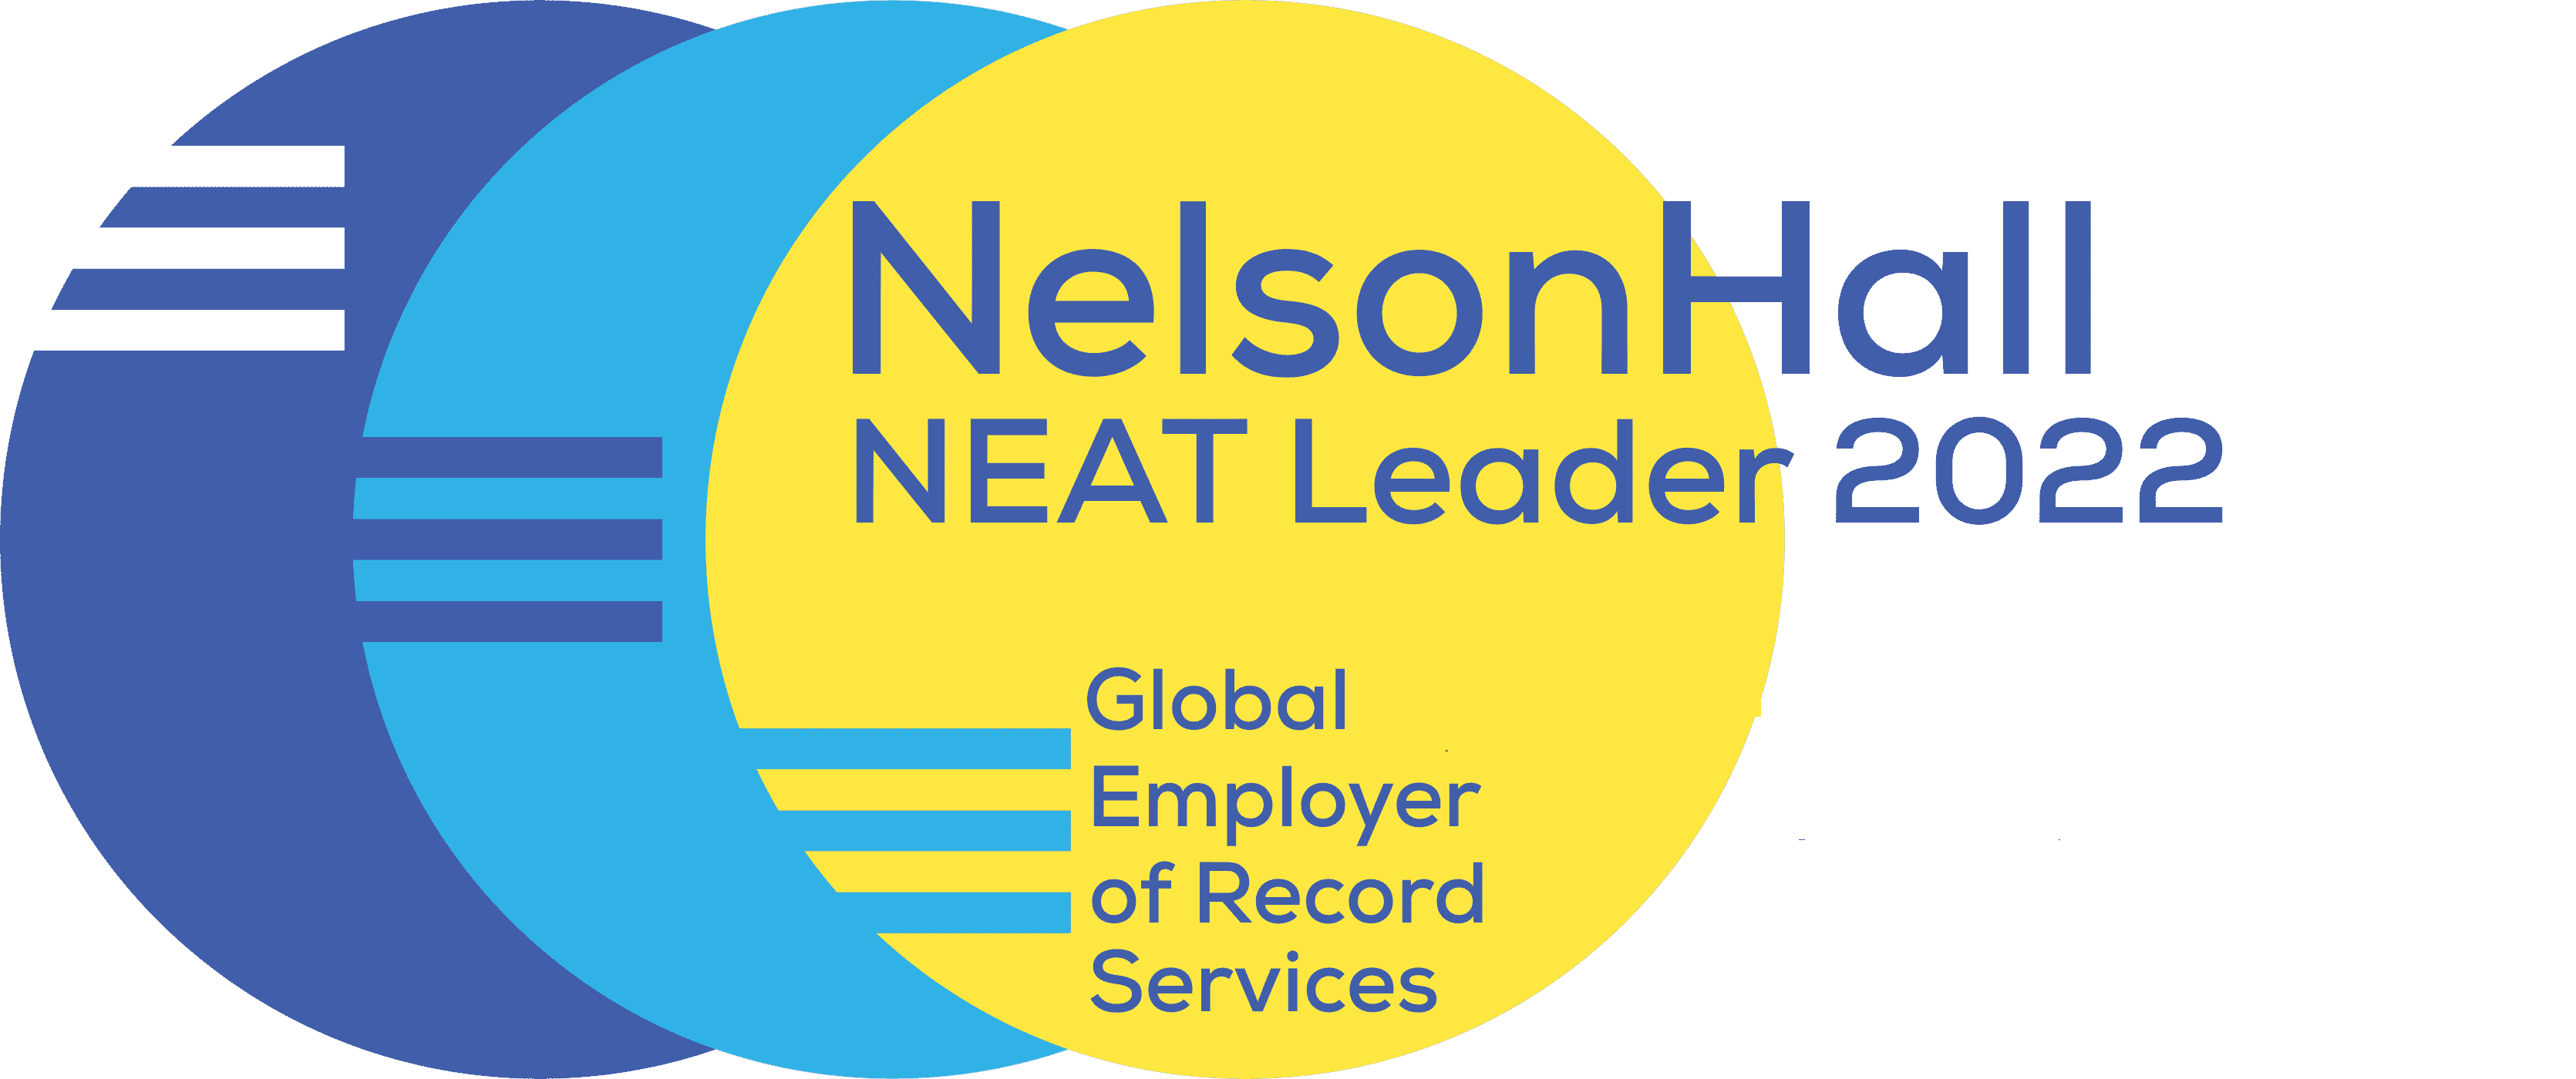 NelsonHall - Se transformer grâce à la connaissance